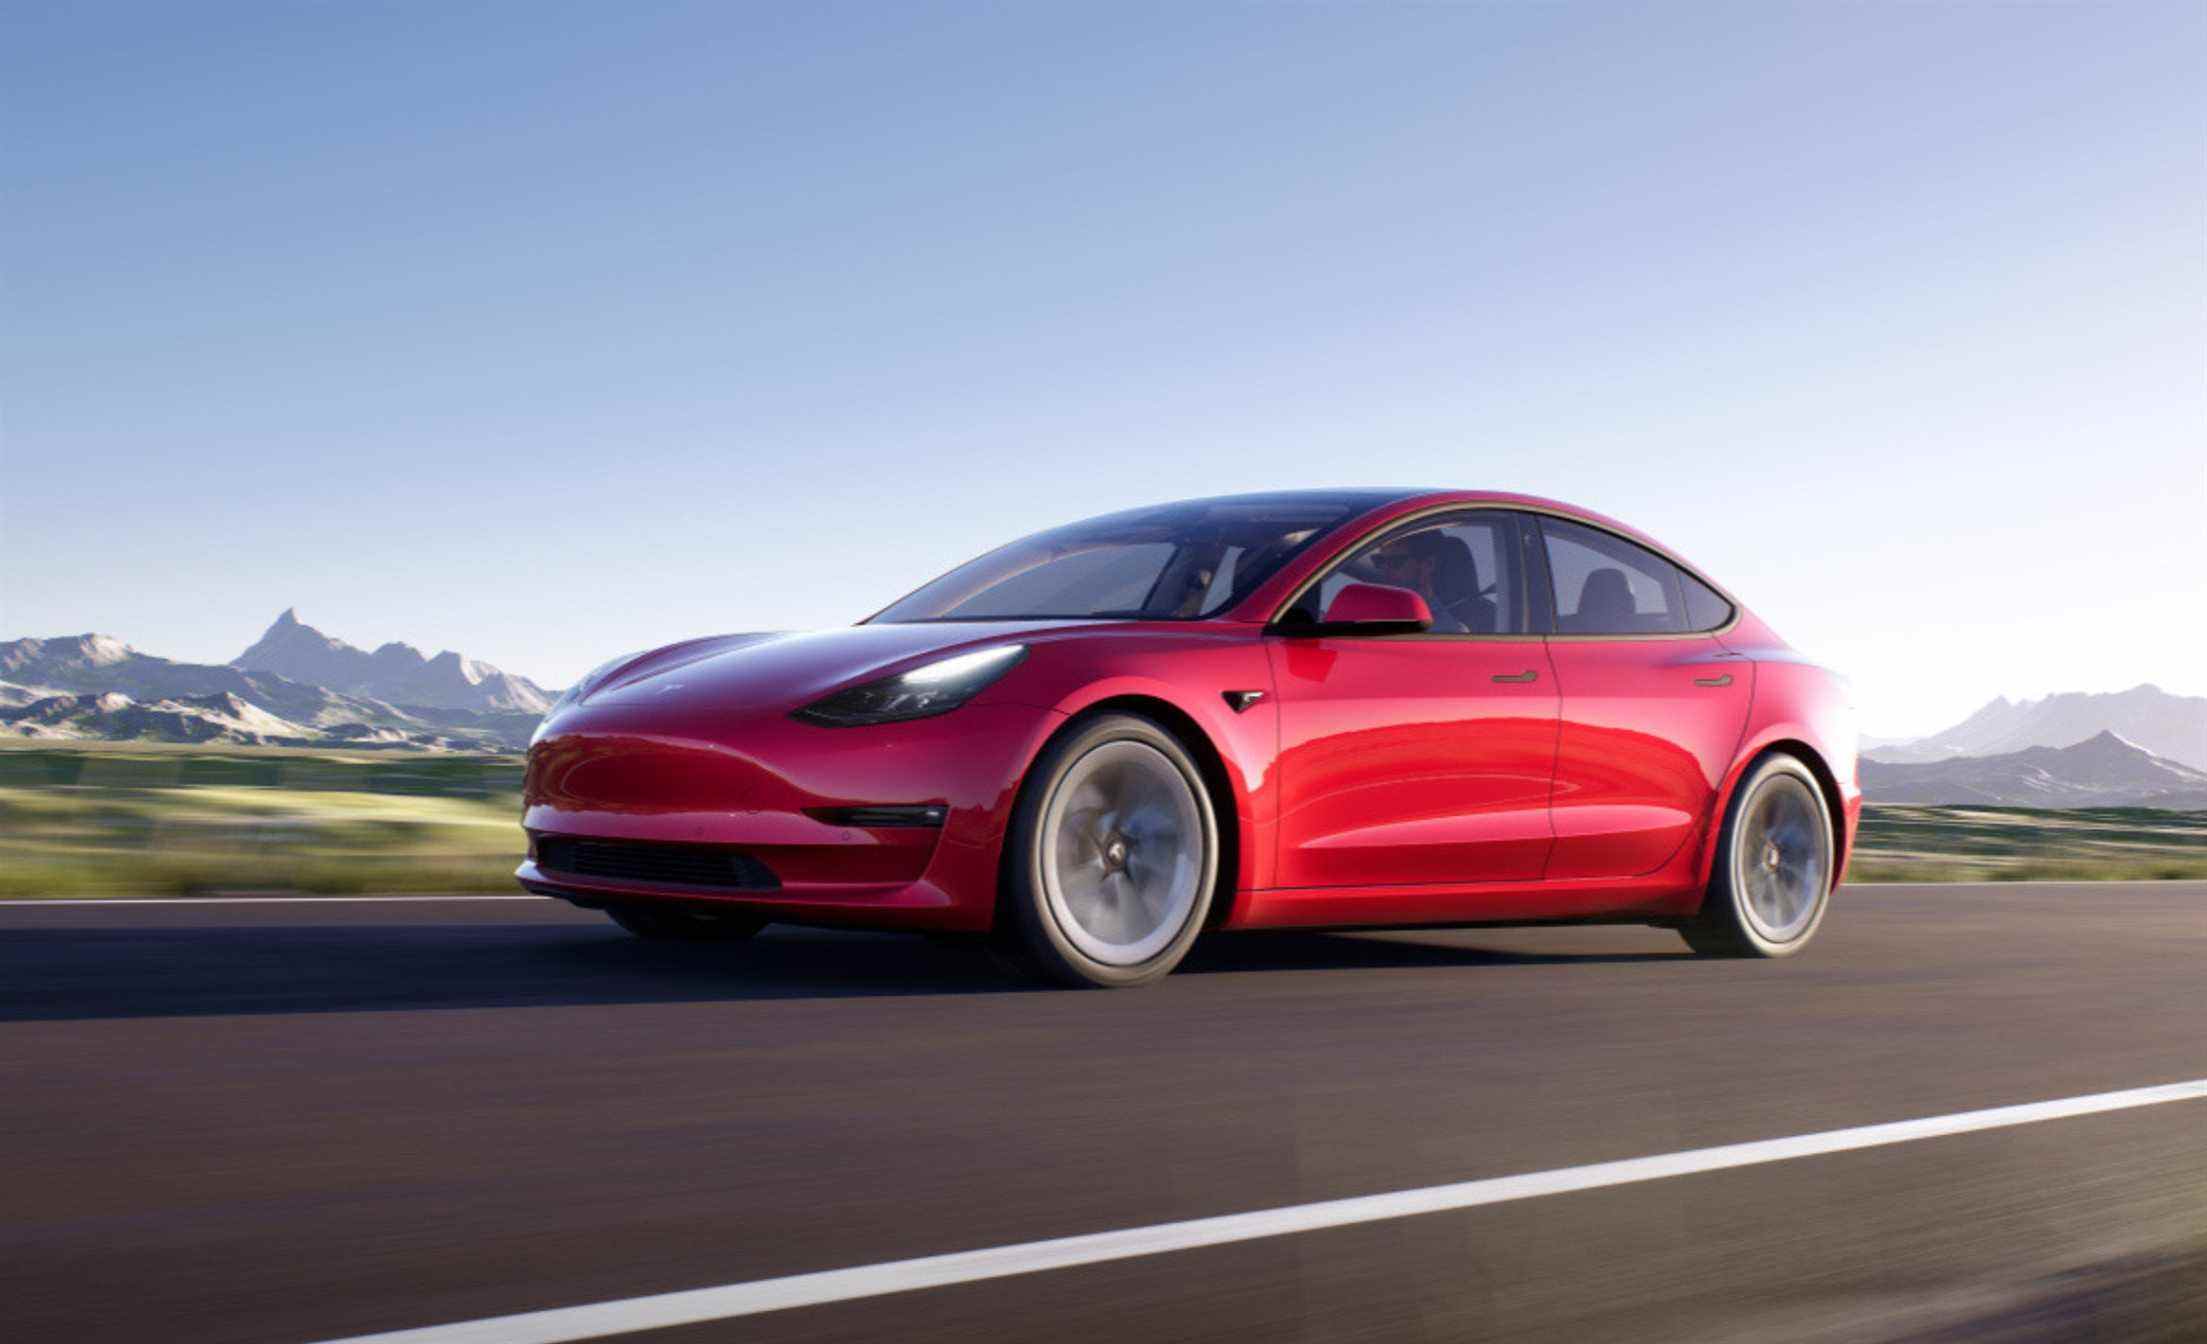 Rendu du modèle 3 de Tesla sur la route